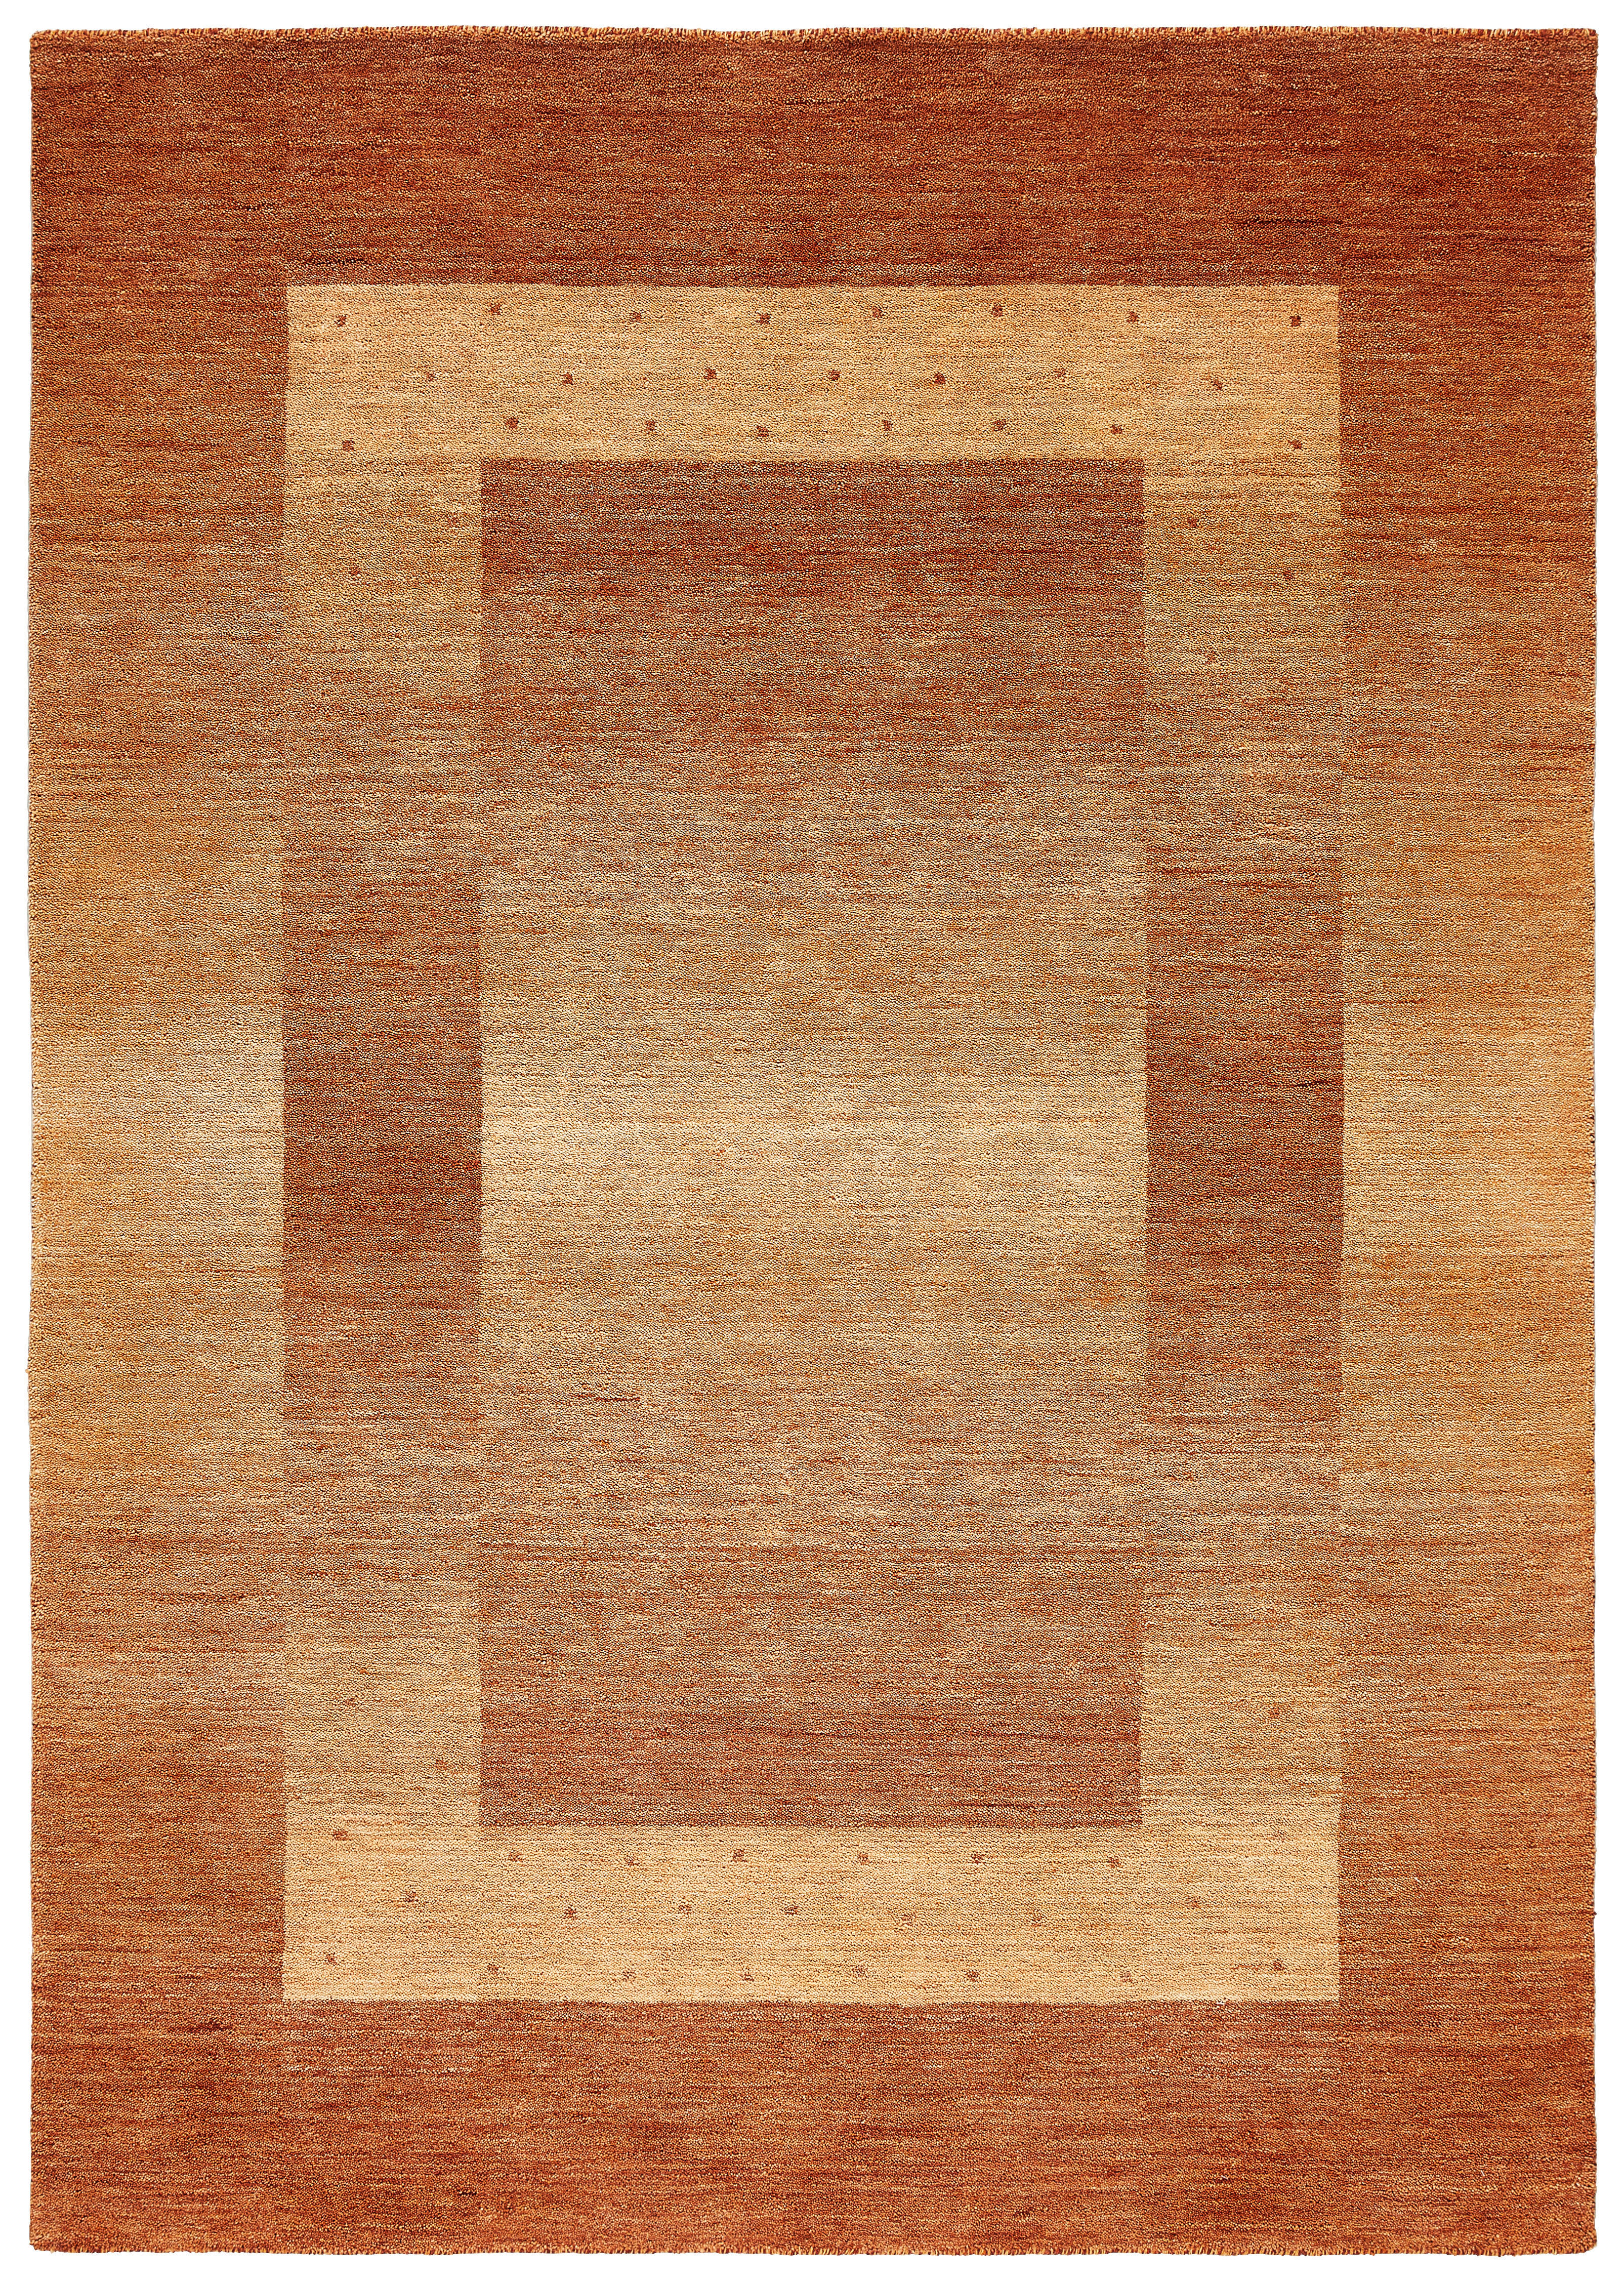 ORIENTTEPPICH 70/140 cm  - Terracotta, KONVENTIONELL, Textil (70/140cm) - Cazaris